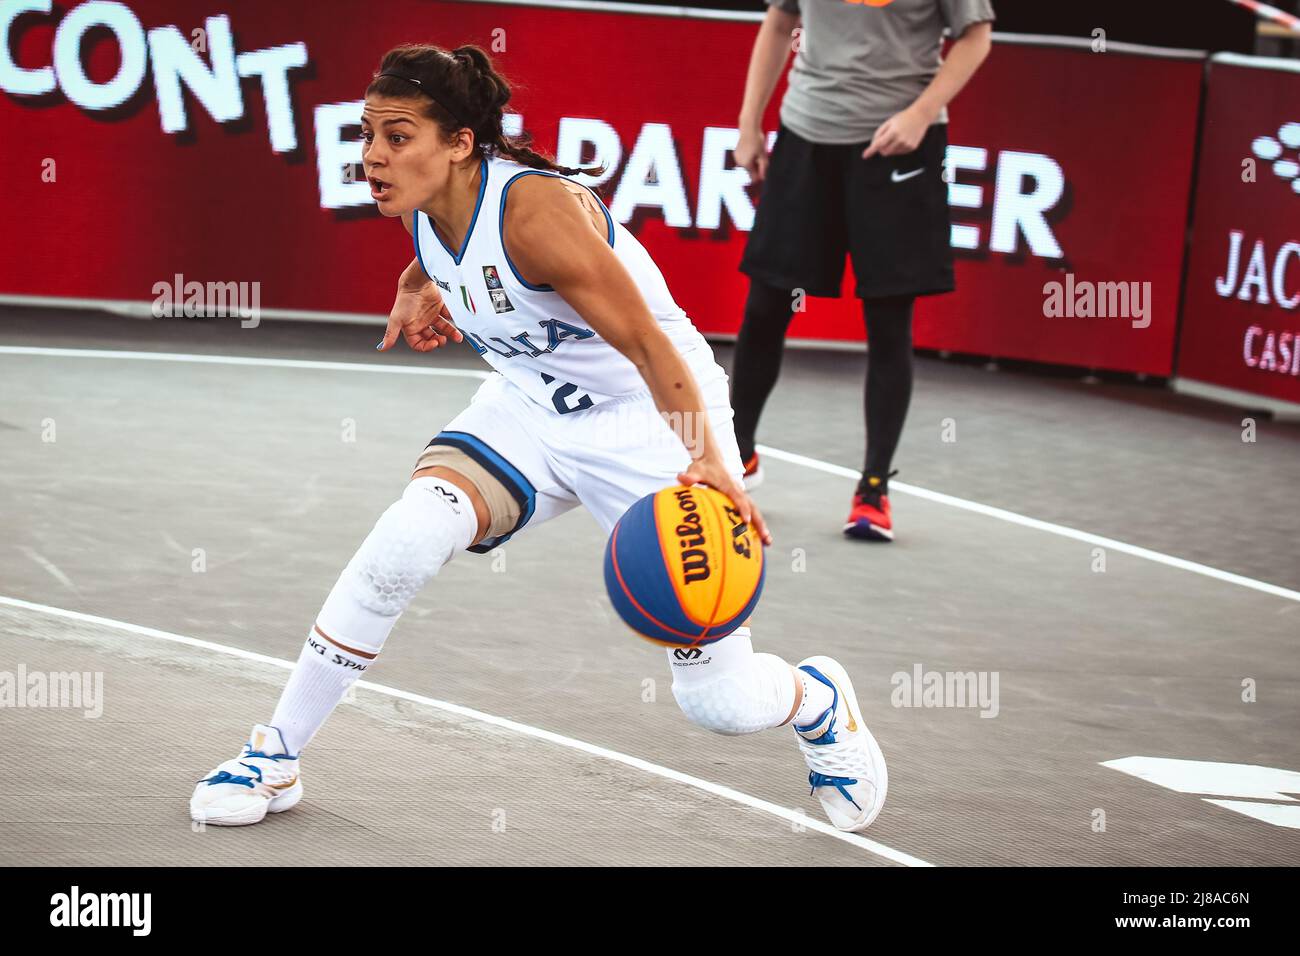 Amsterdam, pays-Bas, 19 juin 2019: Le joueur italien de basket Raelin Marie d'Alie en action pendant le match Italie contre Ukraine Banque D'Images